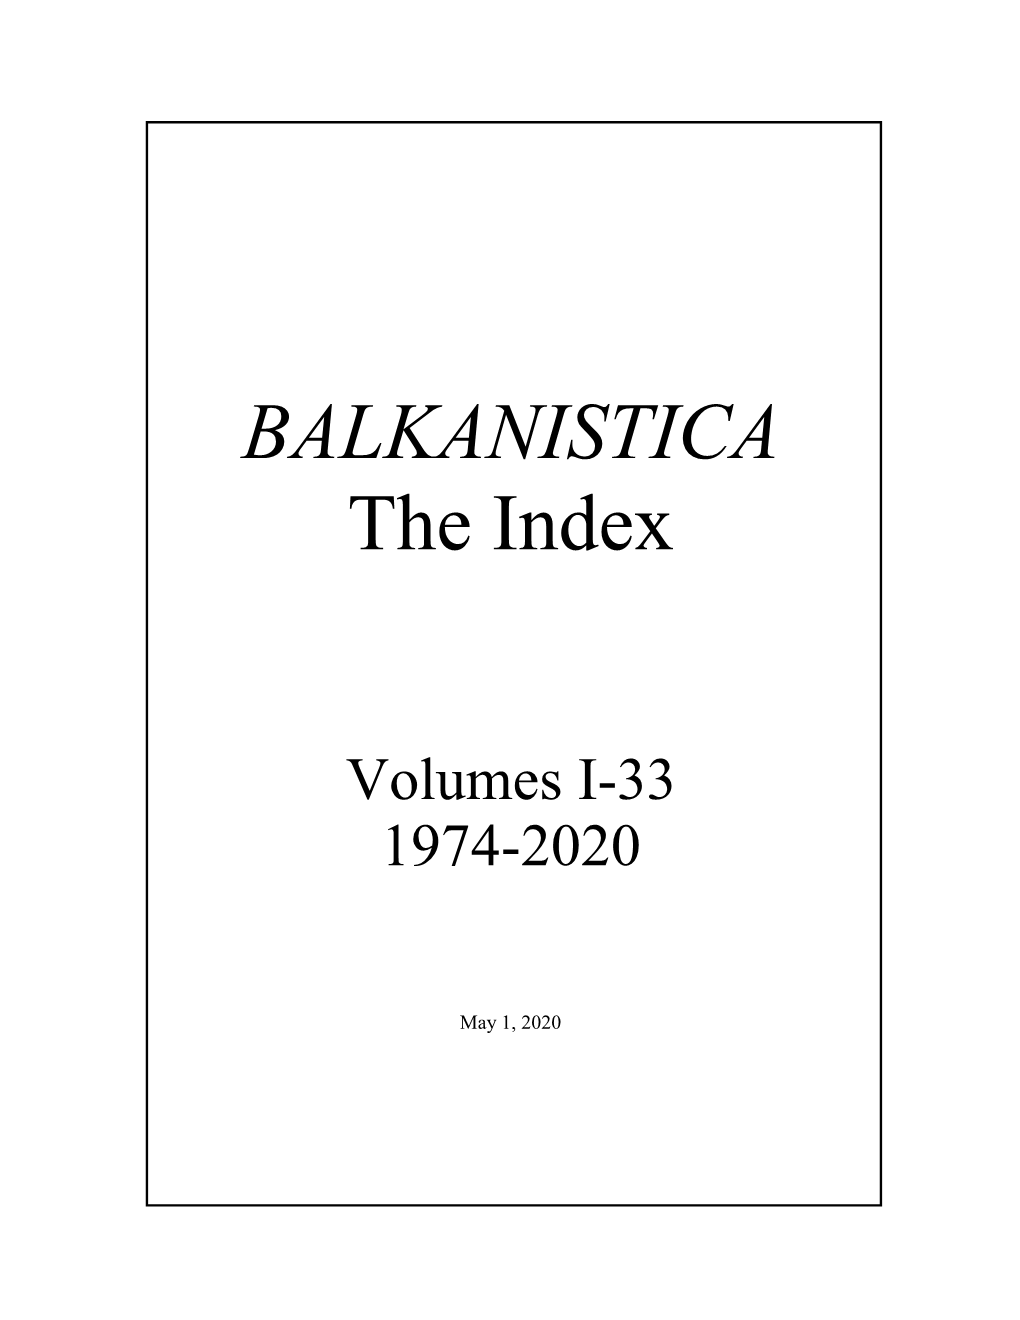 BALKANISTICA the Index